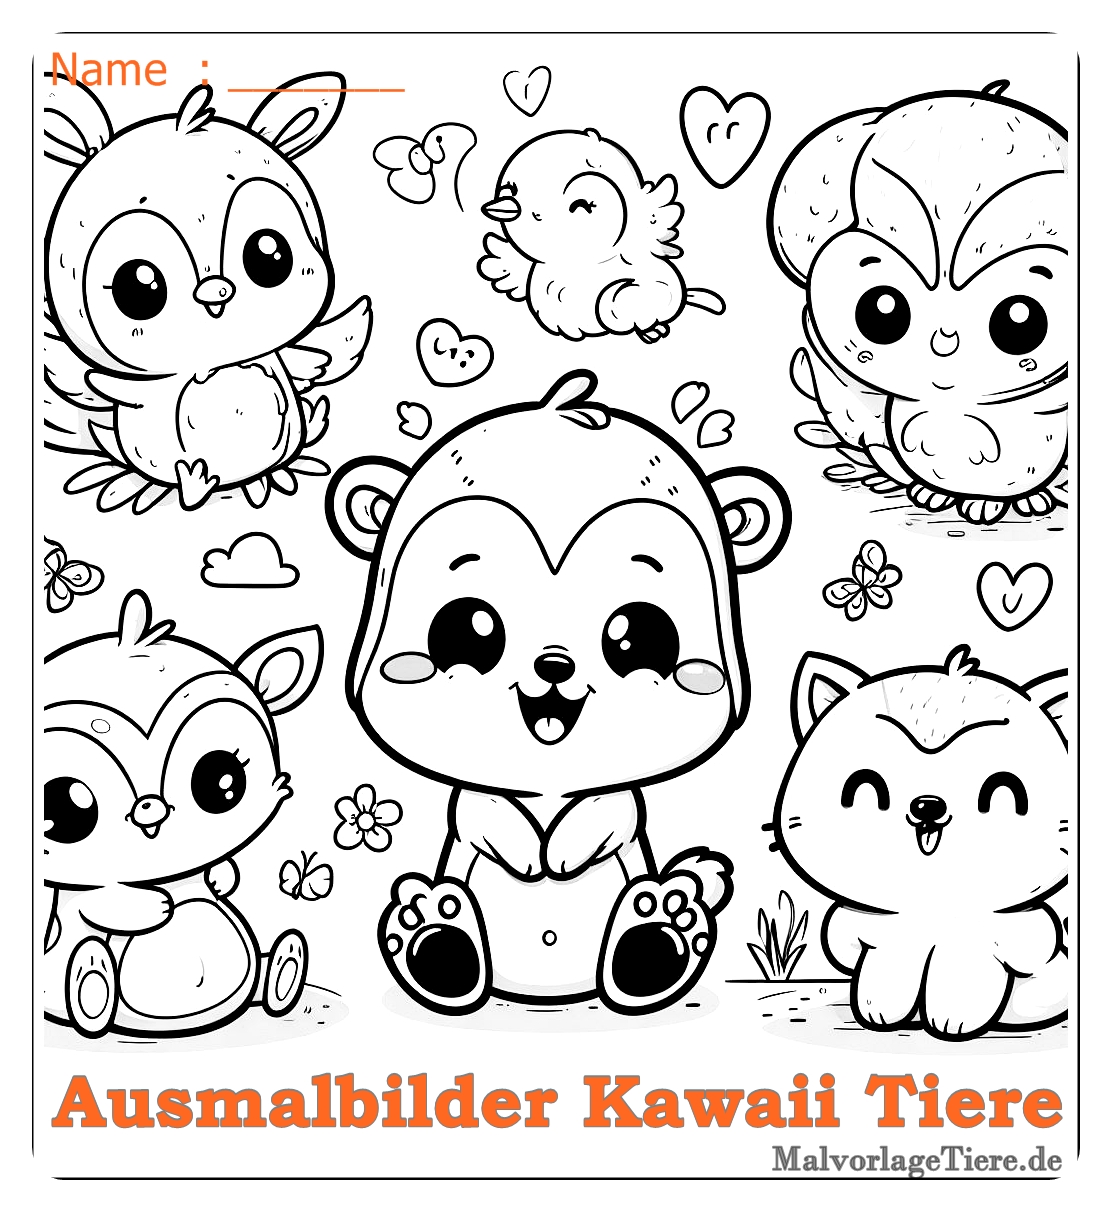 Süß ausmalbilder kawaii tiere 16 by malvorlagetiere.de